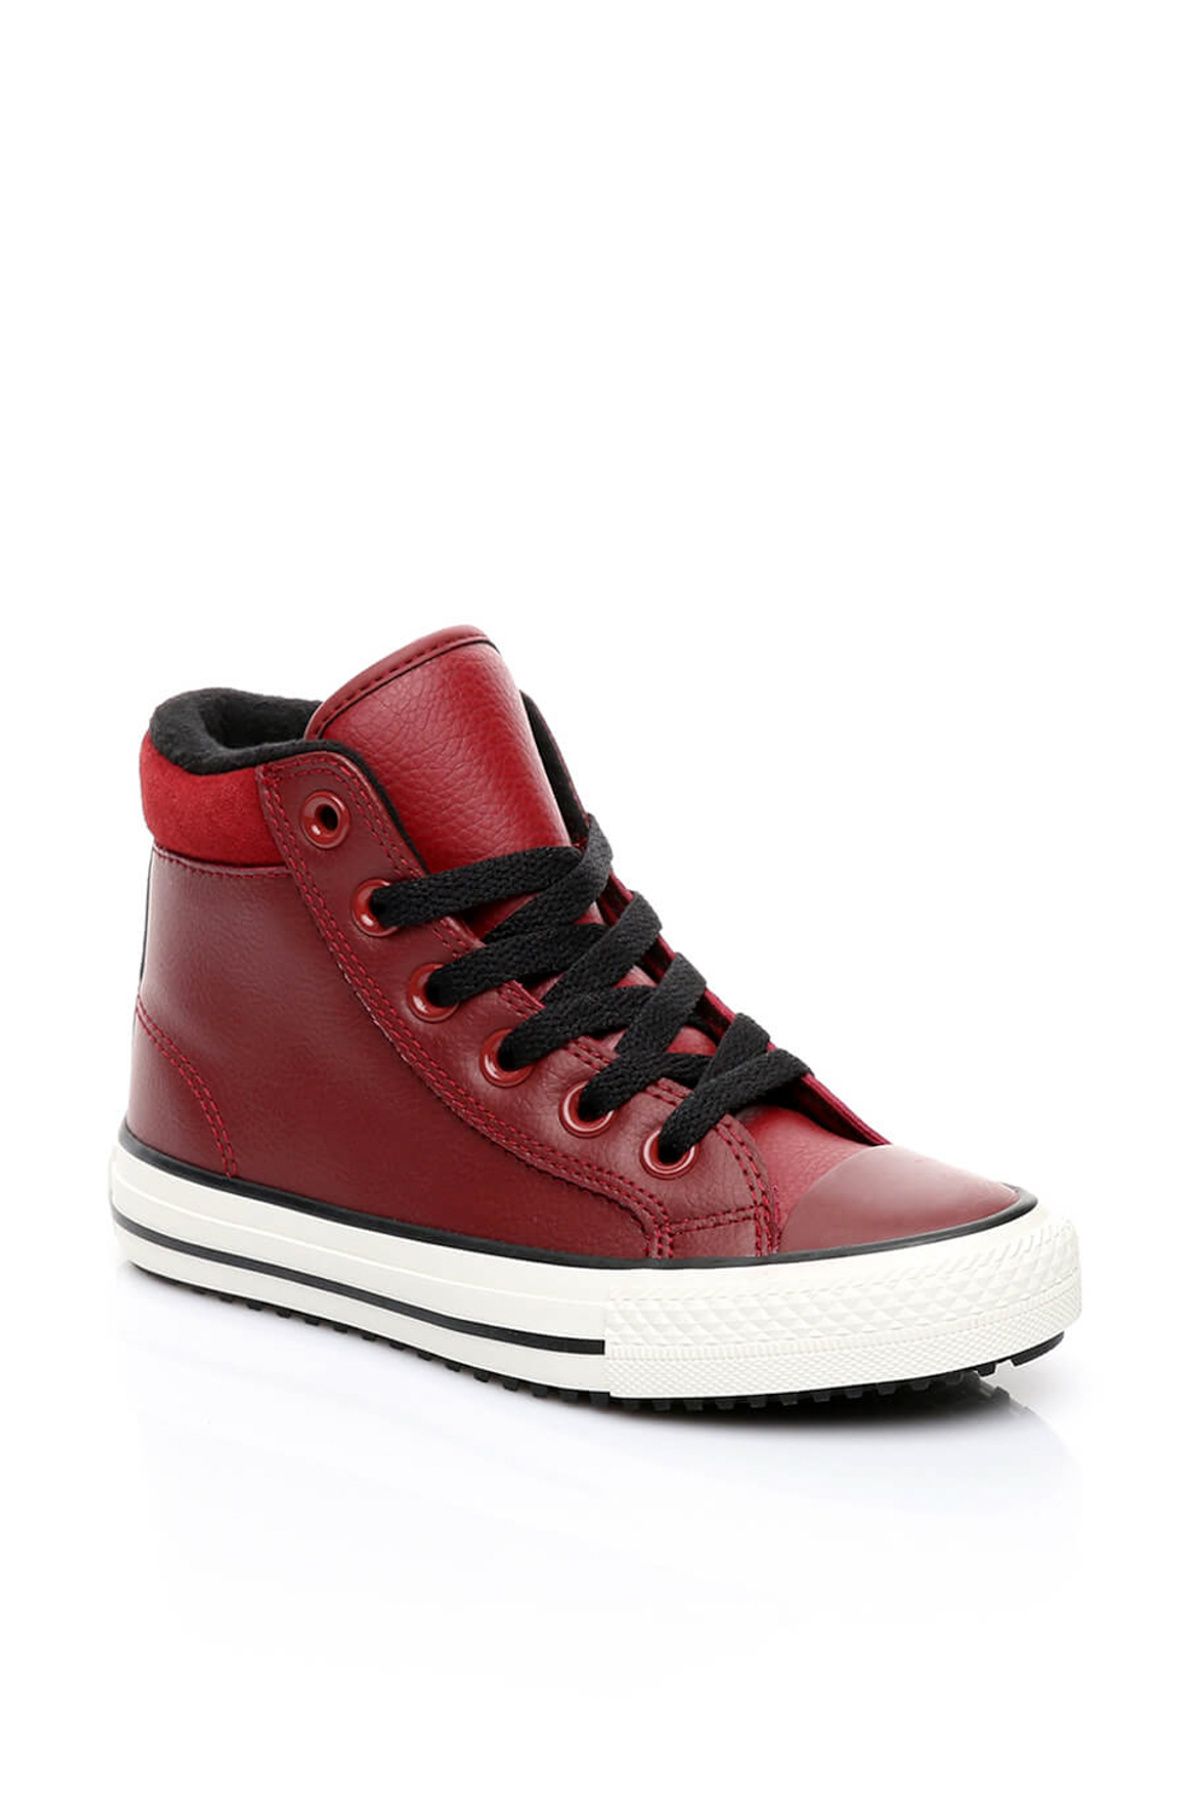 Converse Bordo Erkek Çocuk Ayakkabı 654309C